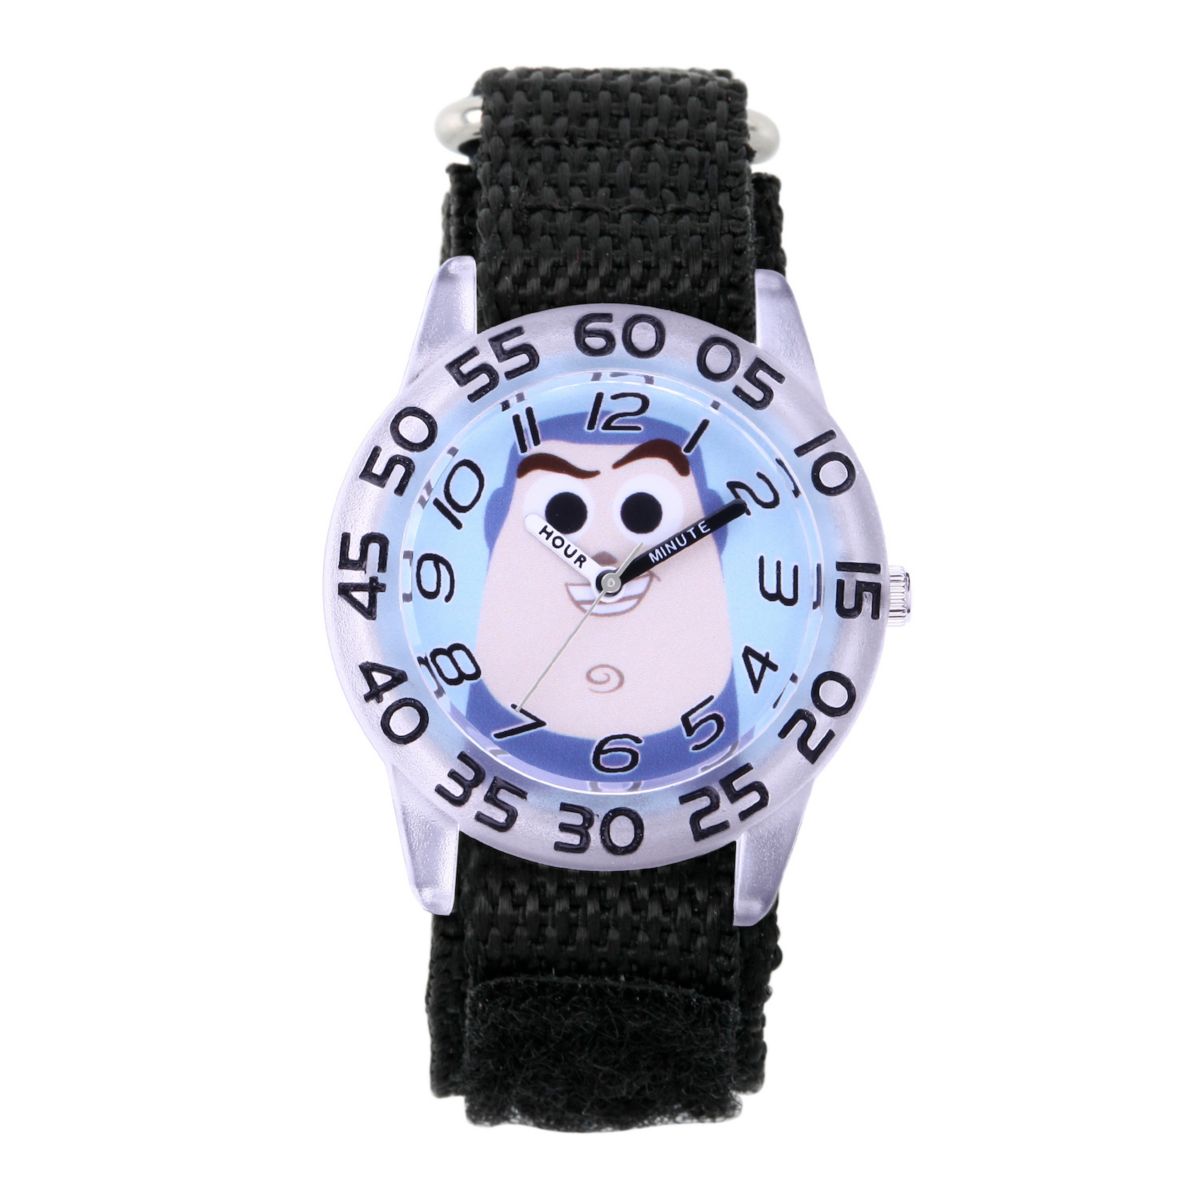 Детские часы Buzz Lightyear для учителей Disney / Pixar Toy Story 4 Licensed Character